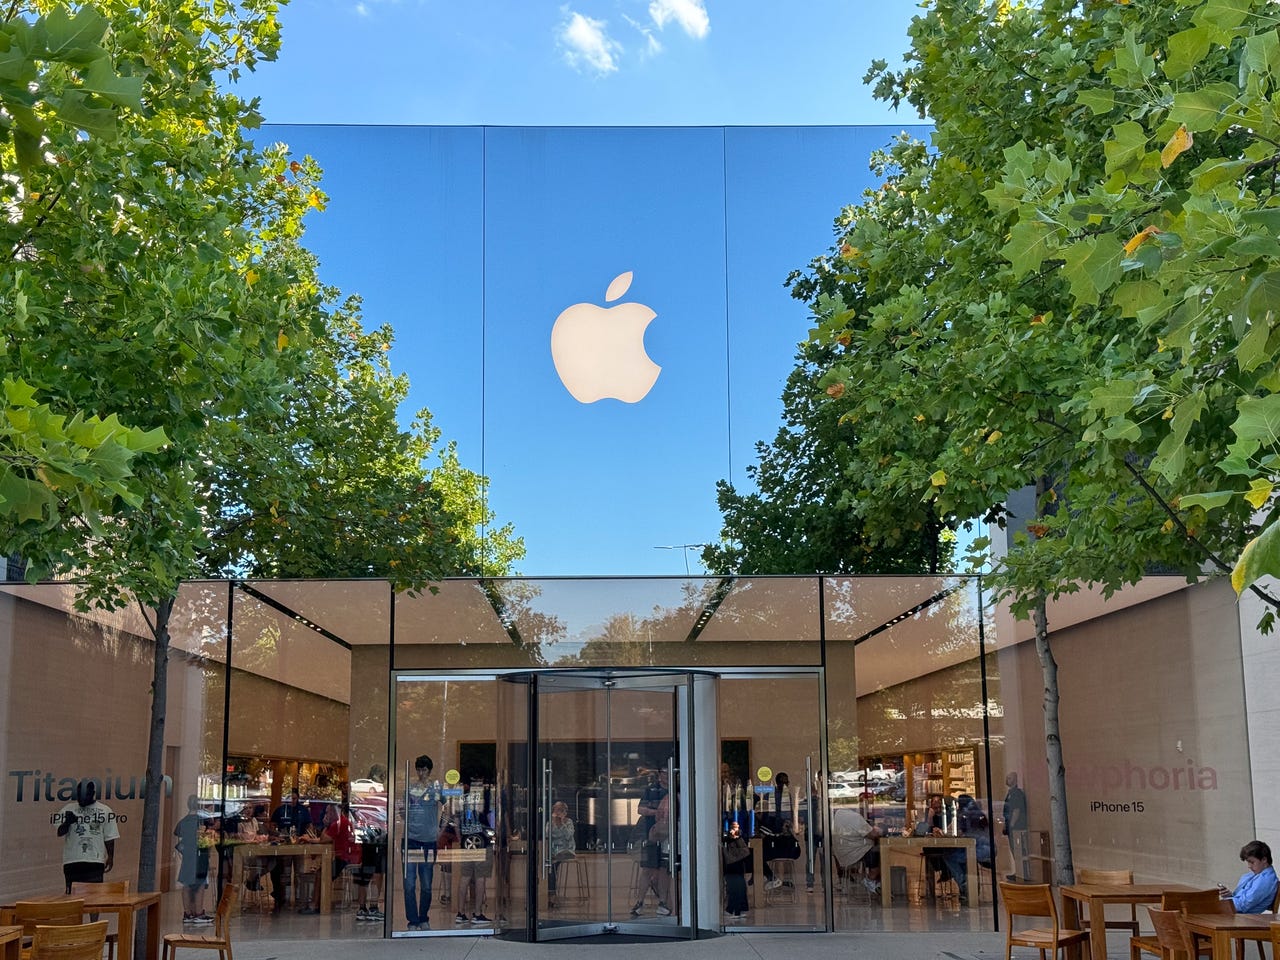 Foto de Apple Store tomada con el iPhone 15 Pro Max a 77 mm